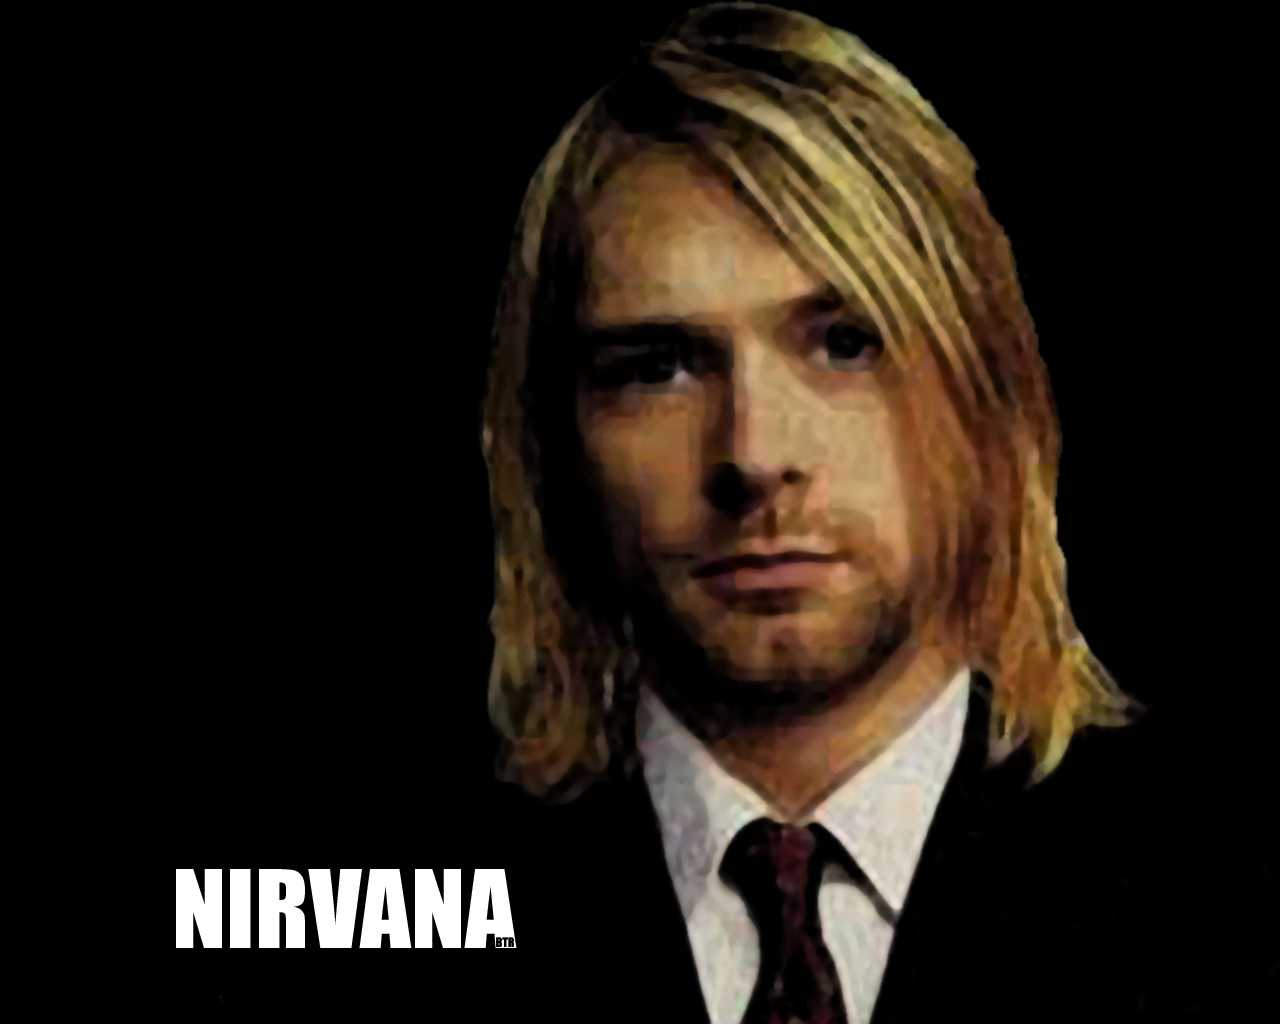 Kurt Cobain Backgrounds